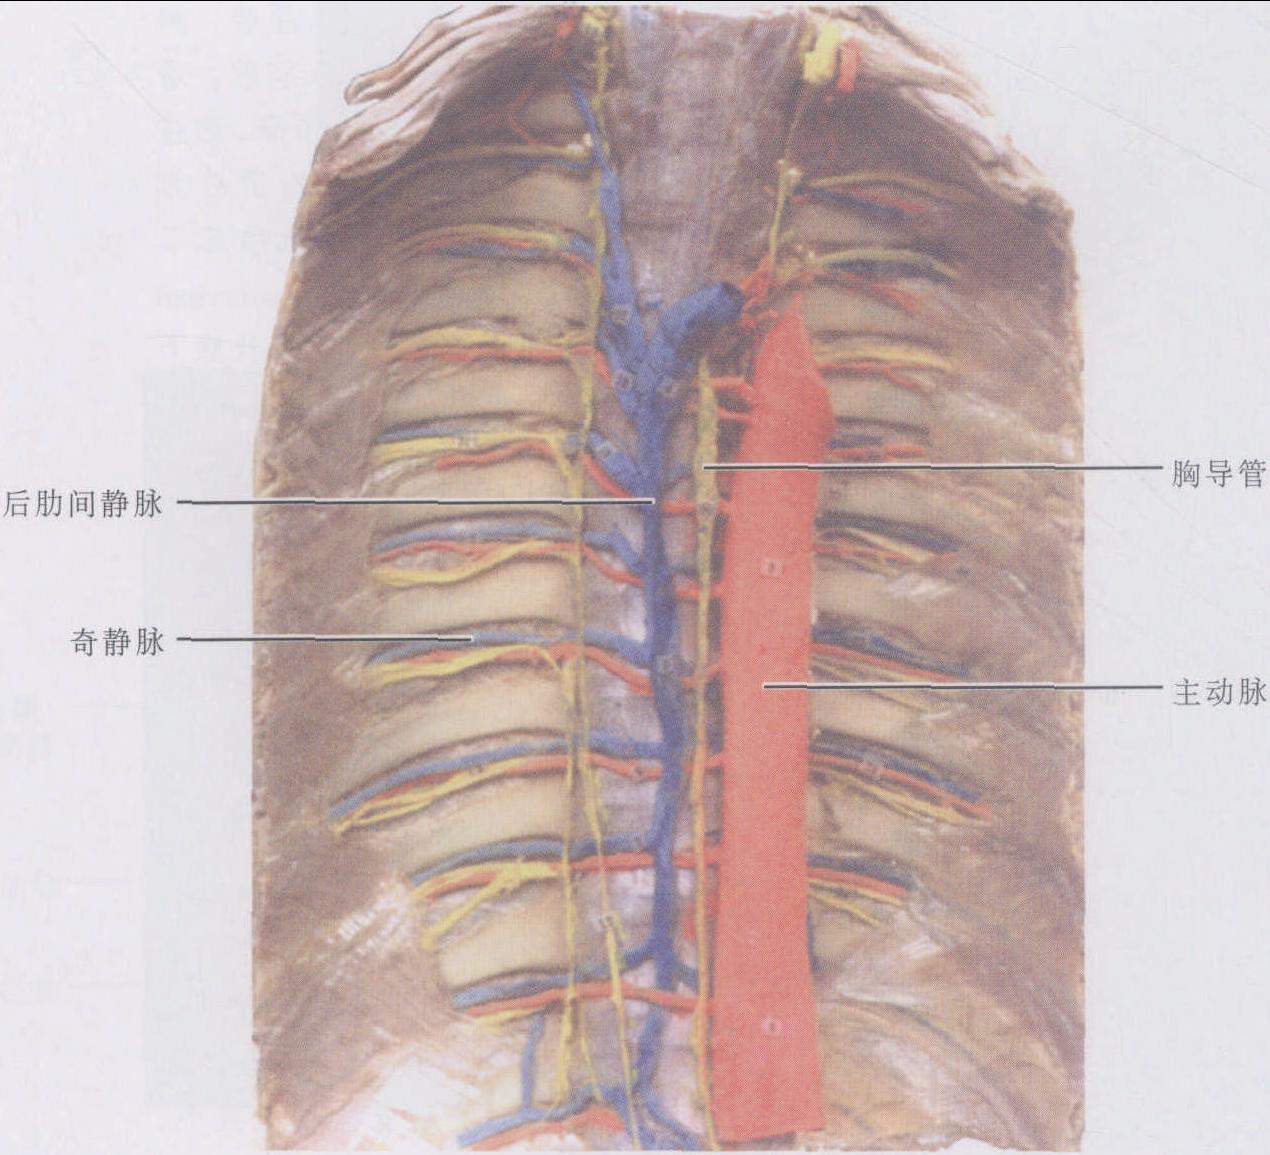 图3-43 腋窝的血管和神经(1)-骨科临床解剖学-医学